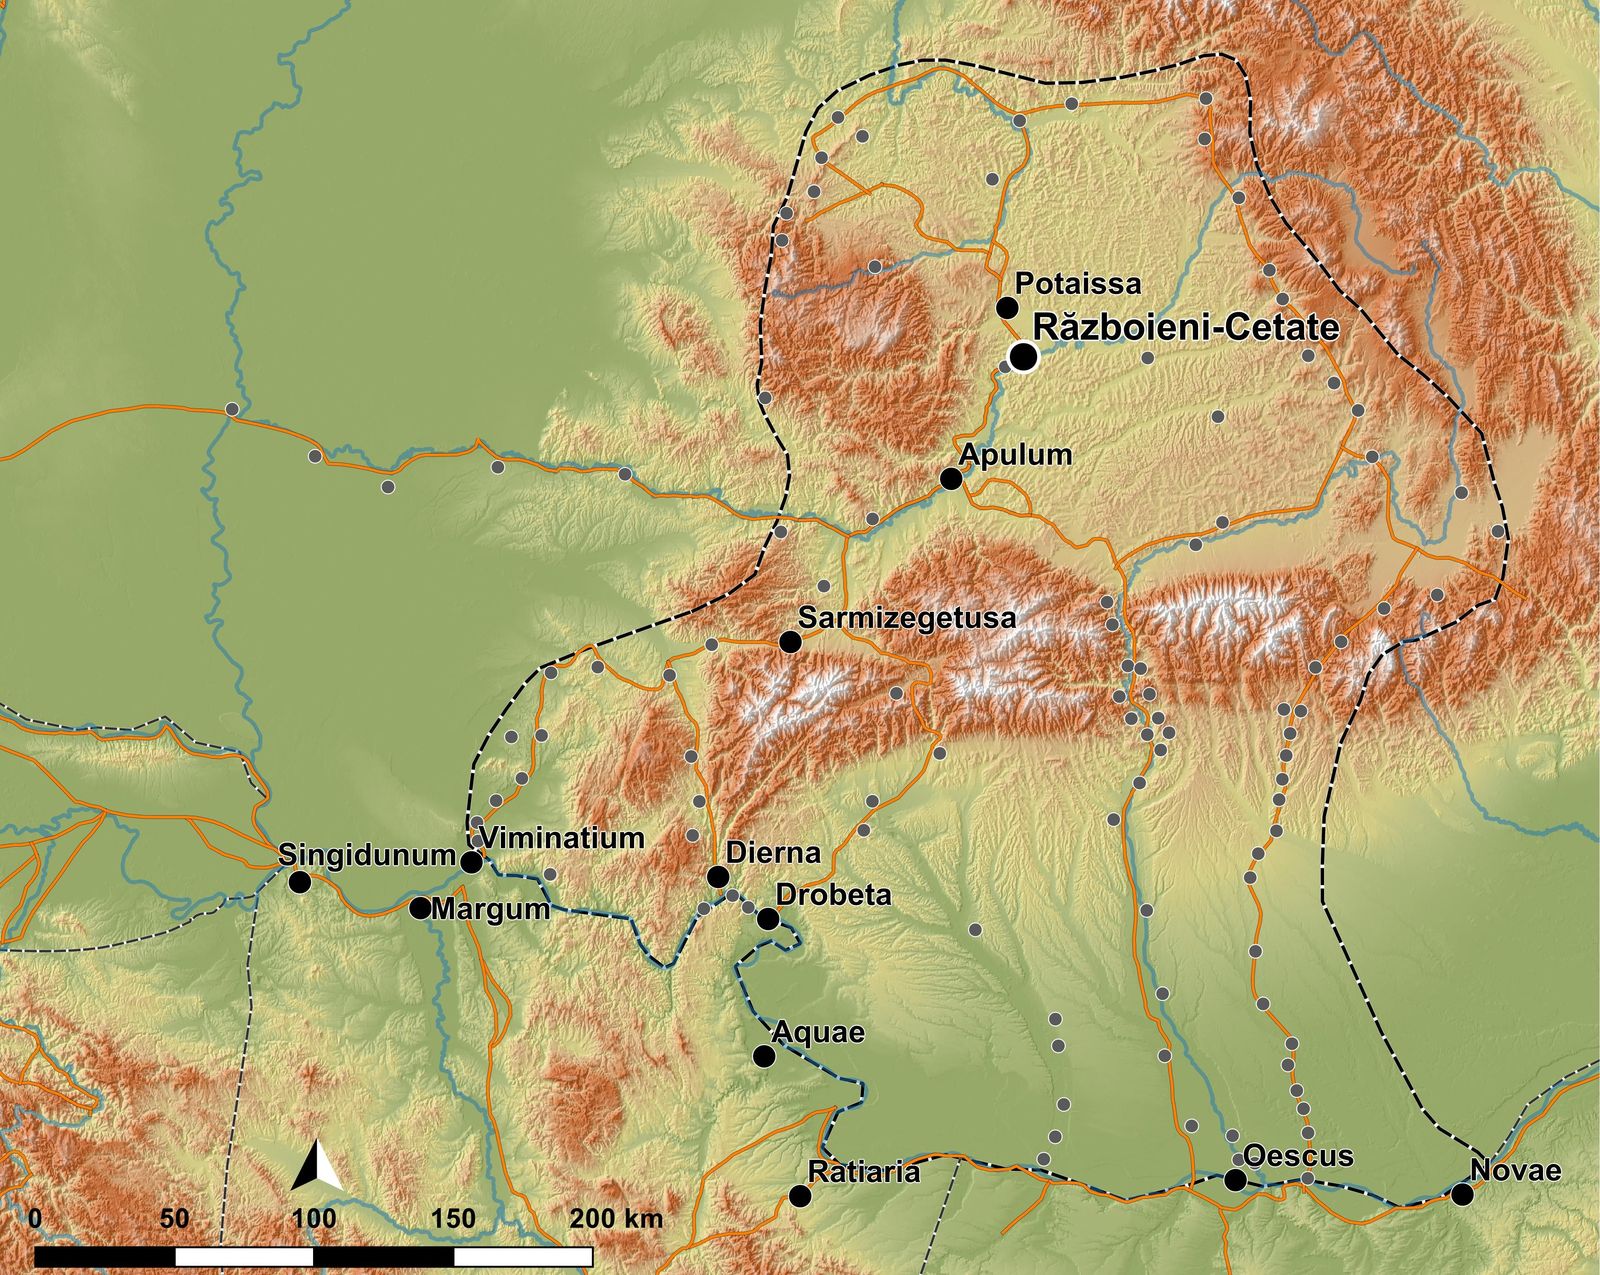 Lage des Fundplatzes Războieni-Cetate in der römischen Provinz Dacia.